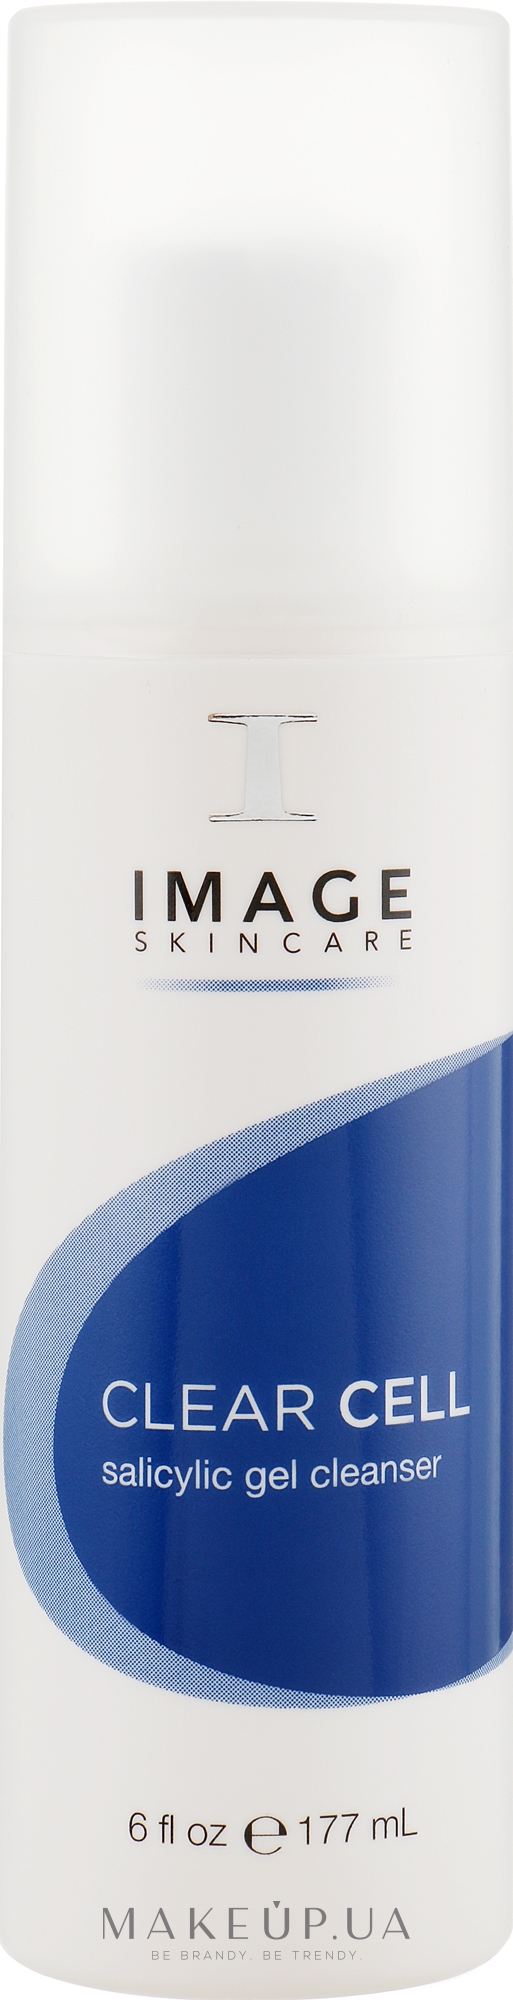 Очищувальний саліциловий гель для проблемної шкіри - Image Skincare Clear Cell Salicylic Gel Cleanser — фото 177ml